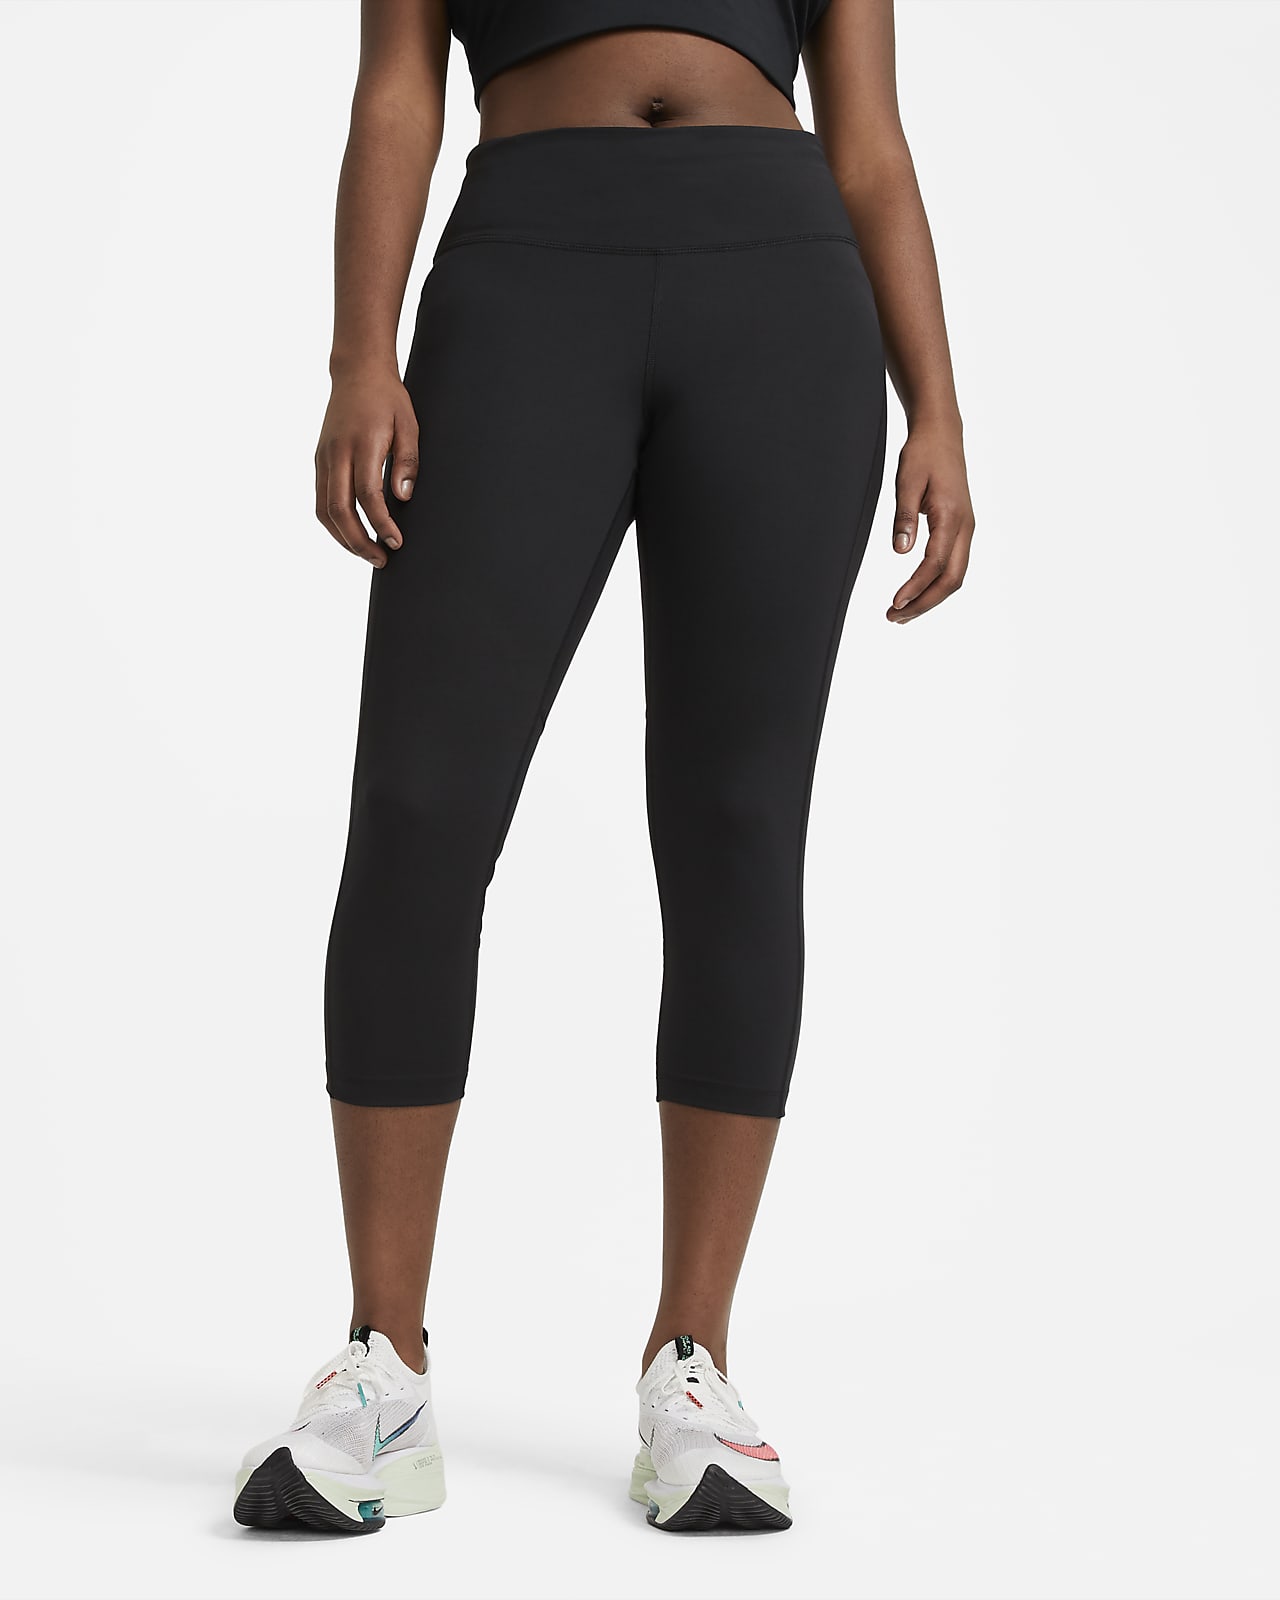 Damskie legginsy do biegania o skróconym kroju ze średnim stanem Nike Fast (duże rozmiary)